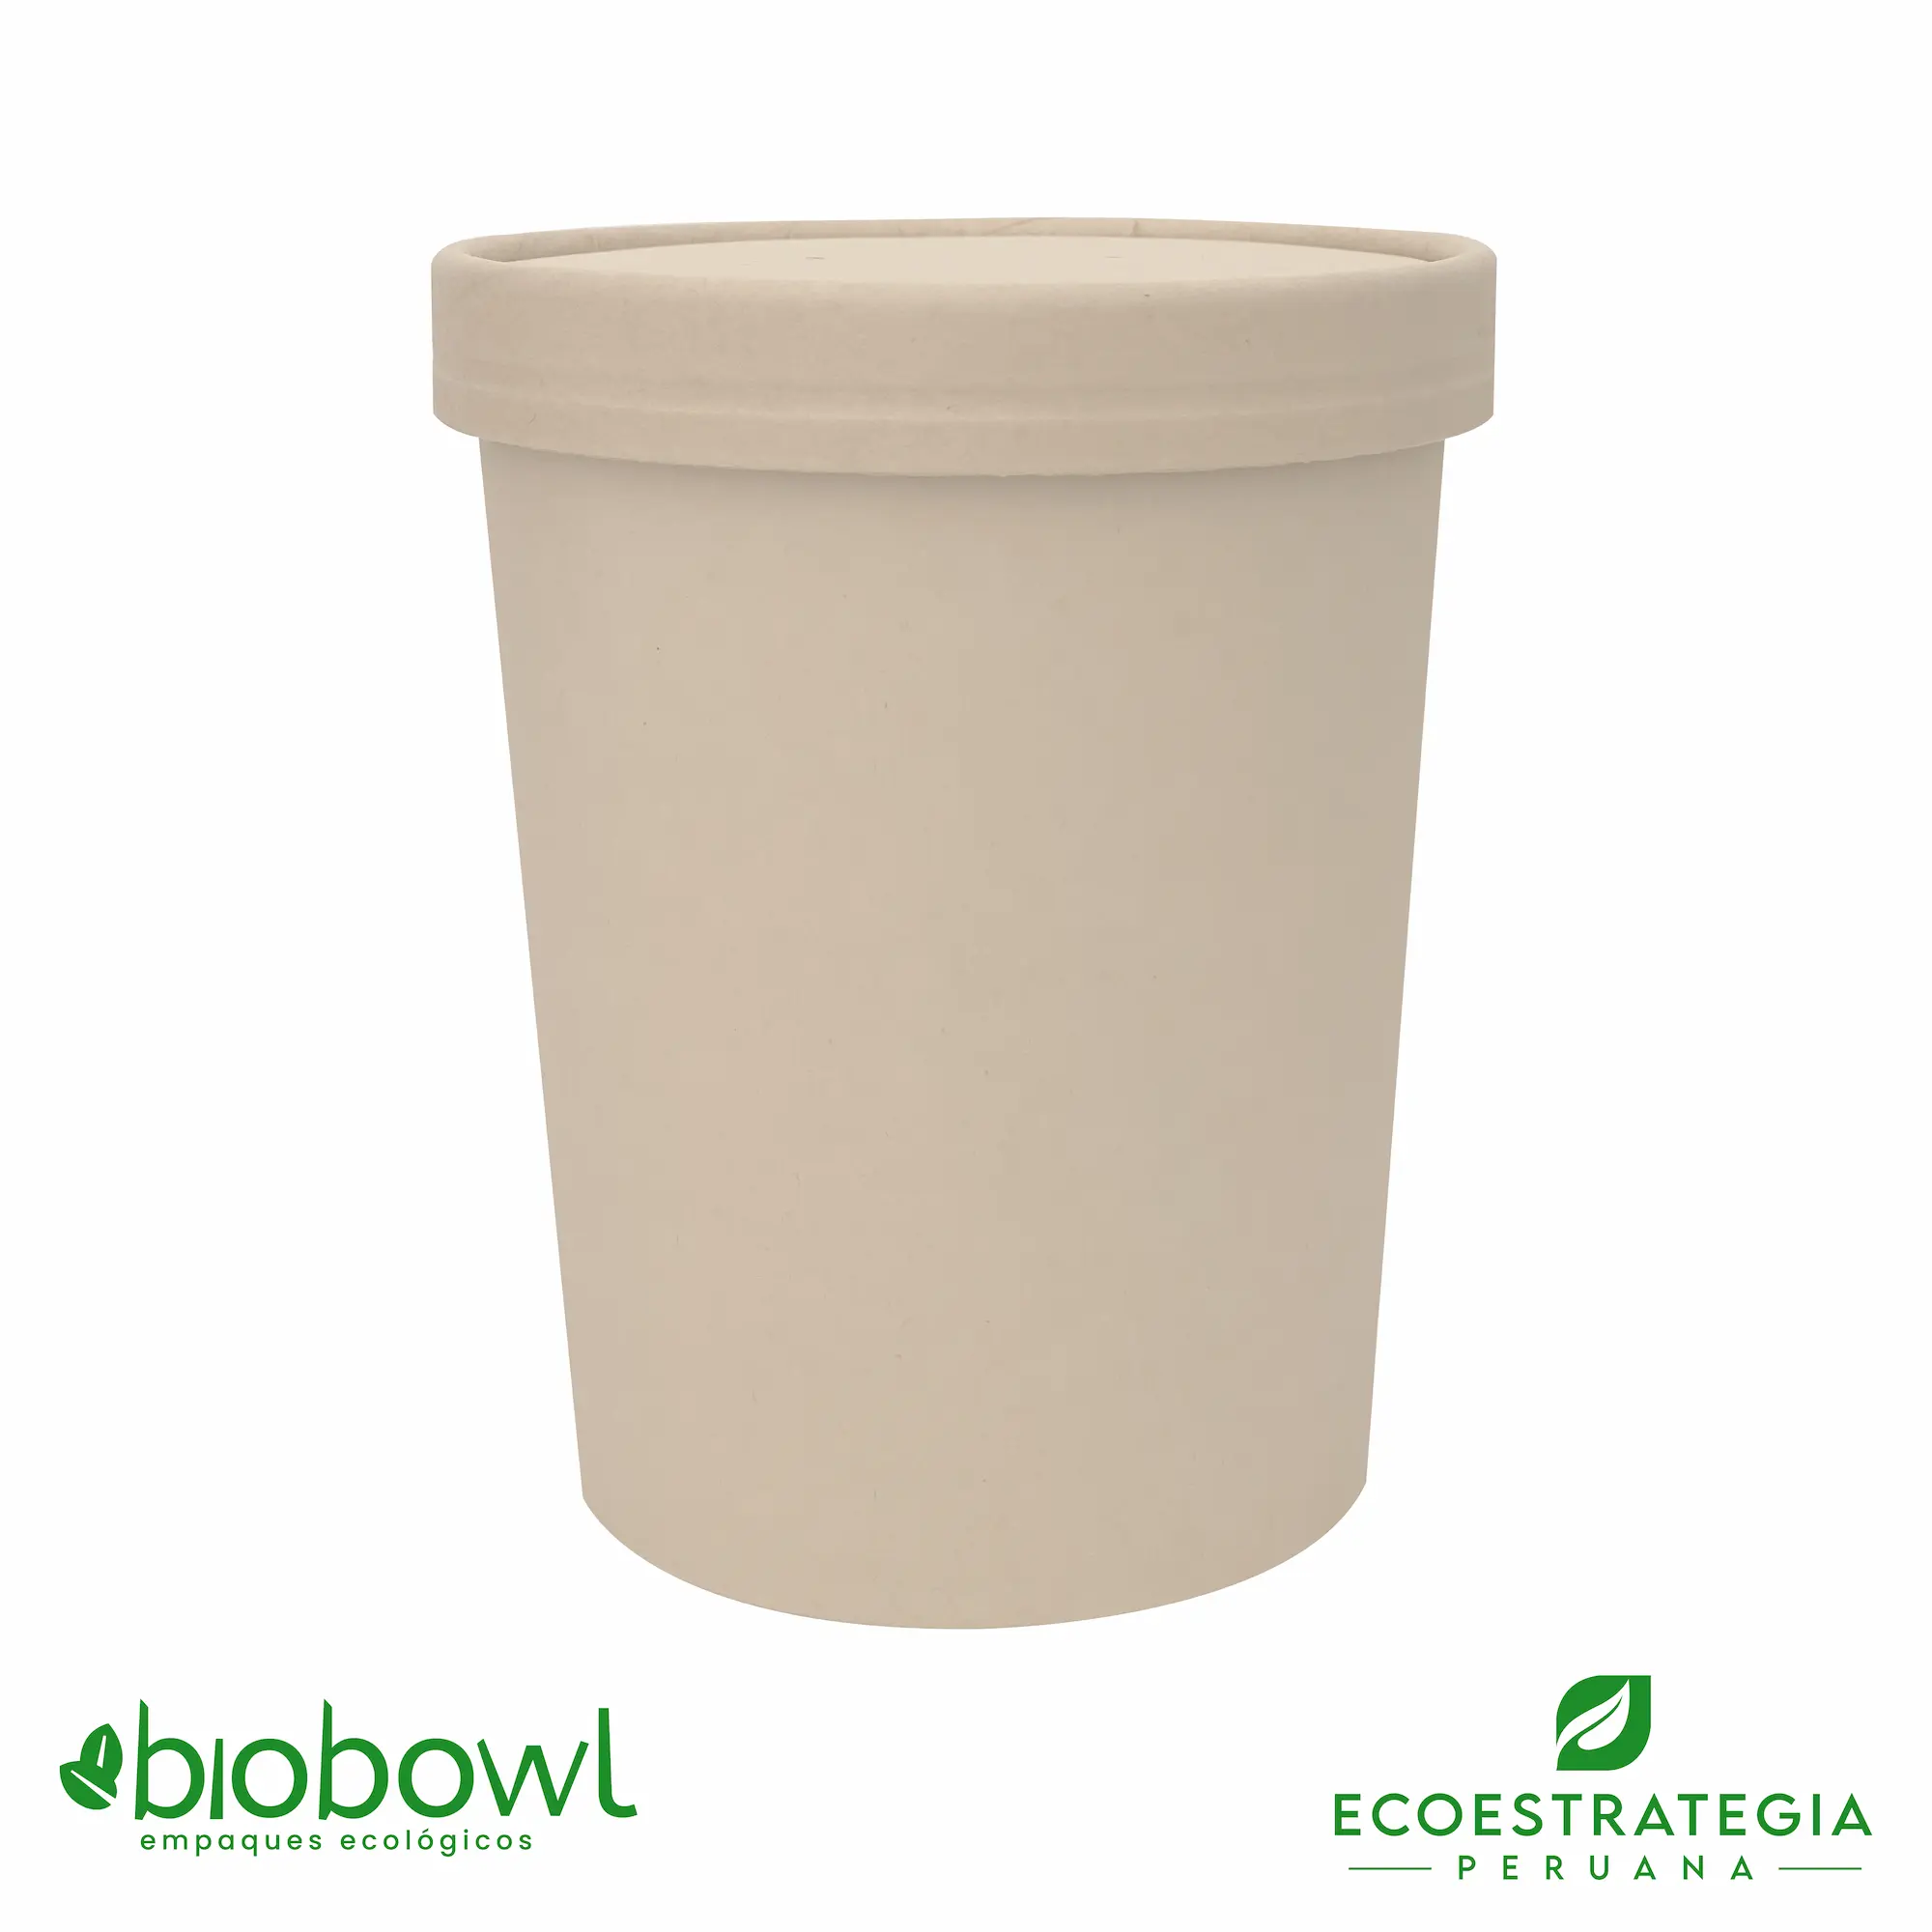 El bowl bambú biodegradable EP-S32 conocido como bowl bamboo 32oz o bambú sopero 32oz, bambú salad 32oz, bowl para ensalada con tapa pet 32oz o sopero con fibra de bambú 32oz, bowl bambú ecologico, bowl bambú reciclable, bowl descartable, bowl bambu postres 32oz, bowl bambu helados 32oz, envase de cartón biodegadable, envases biodegradables Perú, envases biodegradables lima, envases biodegradables peru, envases de cartón biodegradables, contenedores de cartón biodegradables